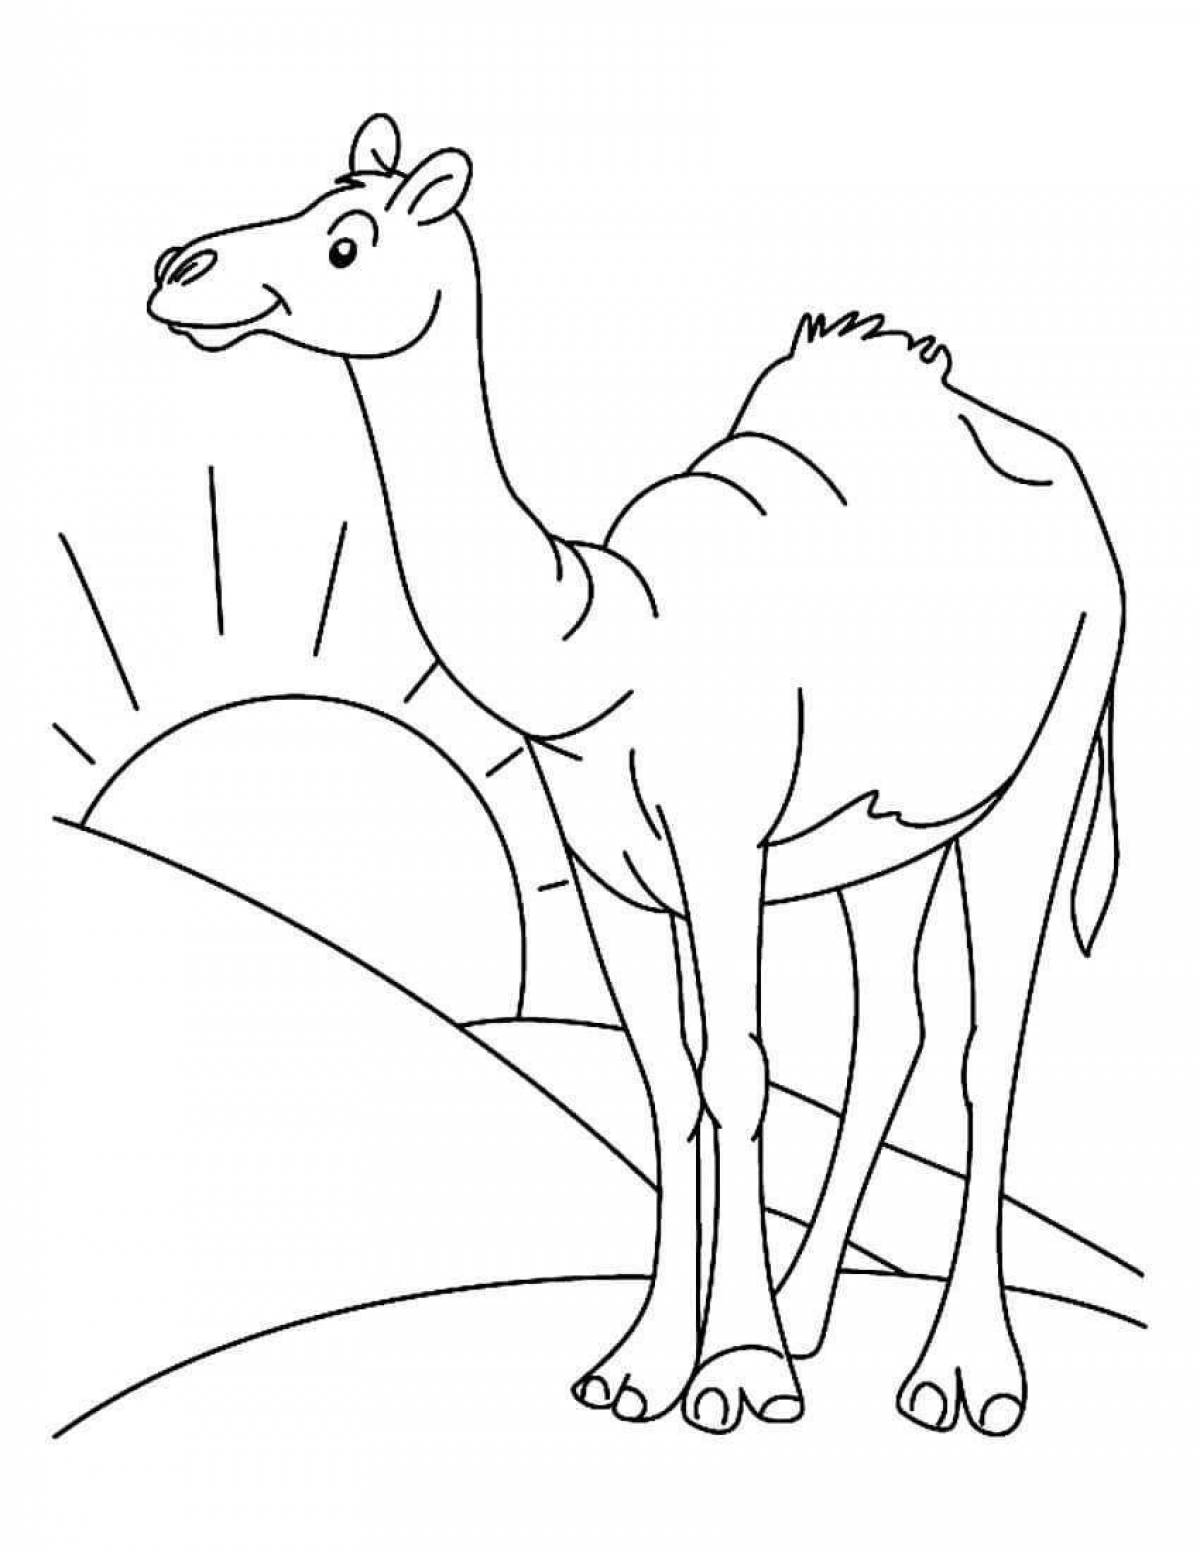 Изысканная раскраска верблюда для детей